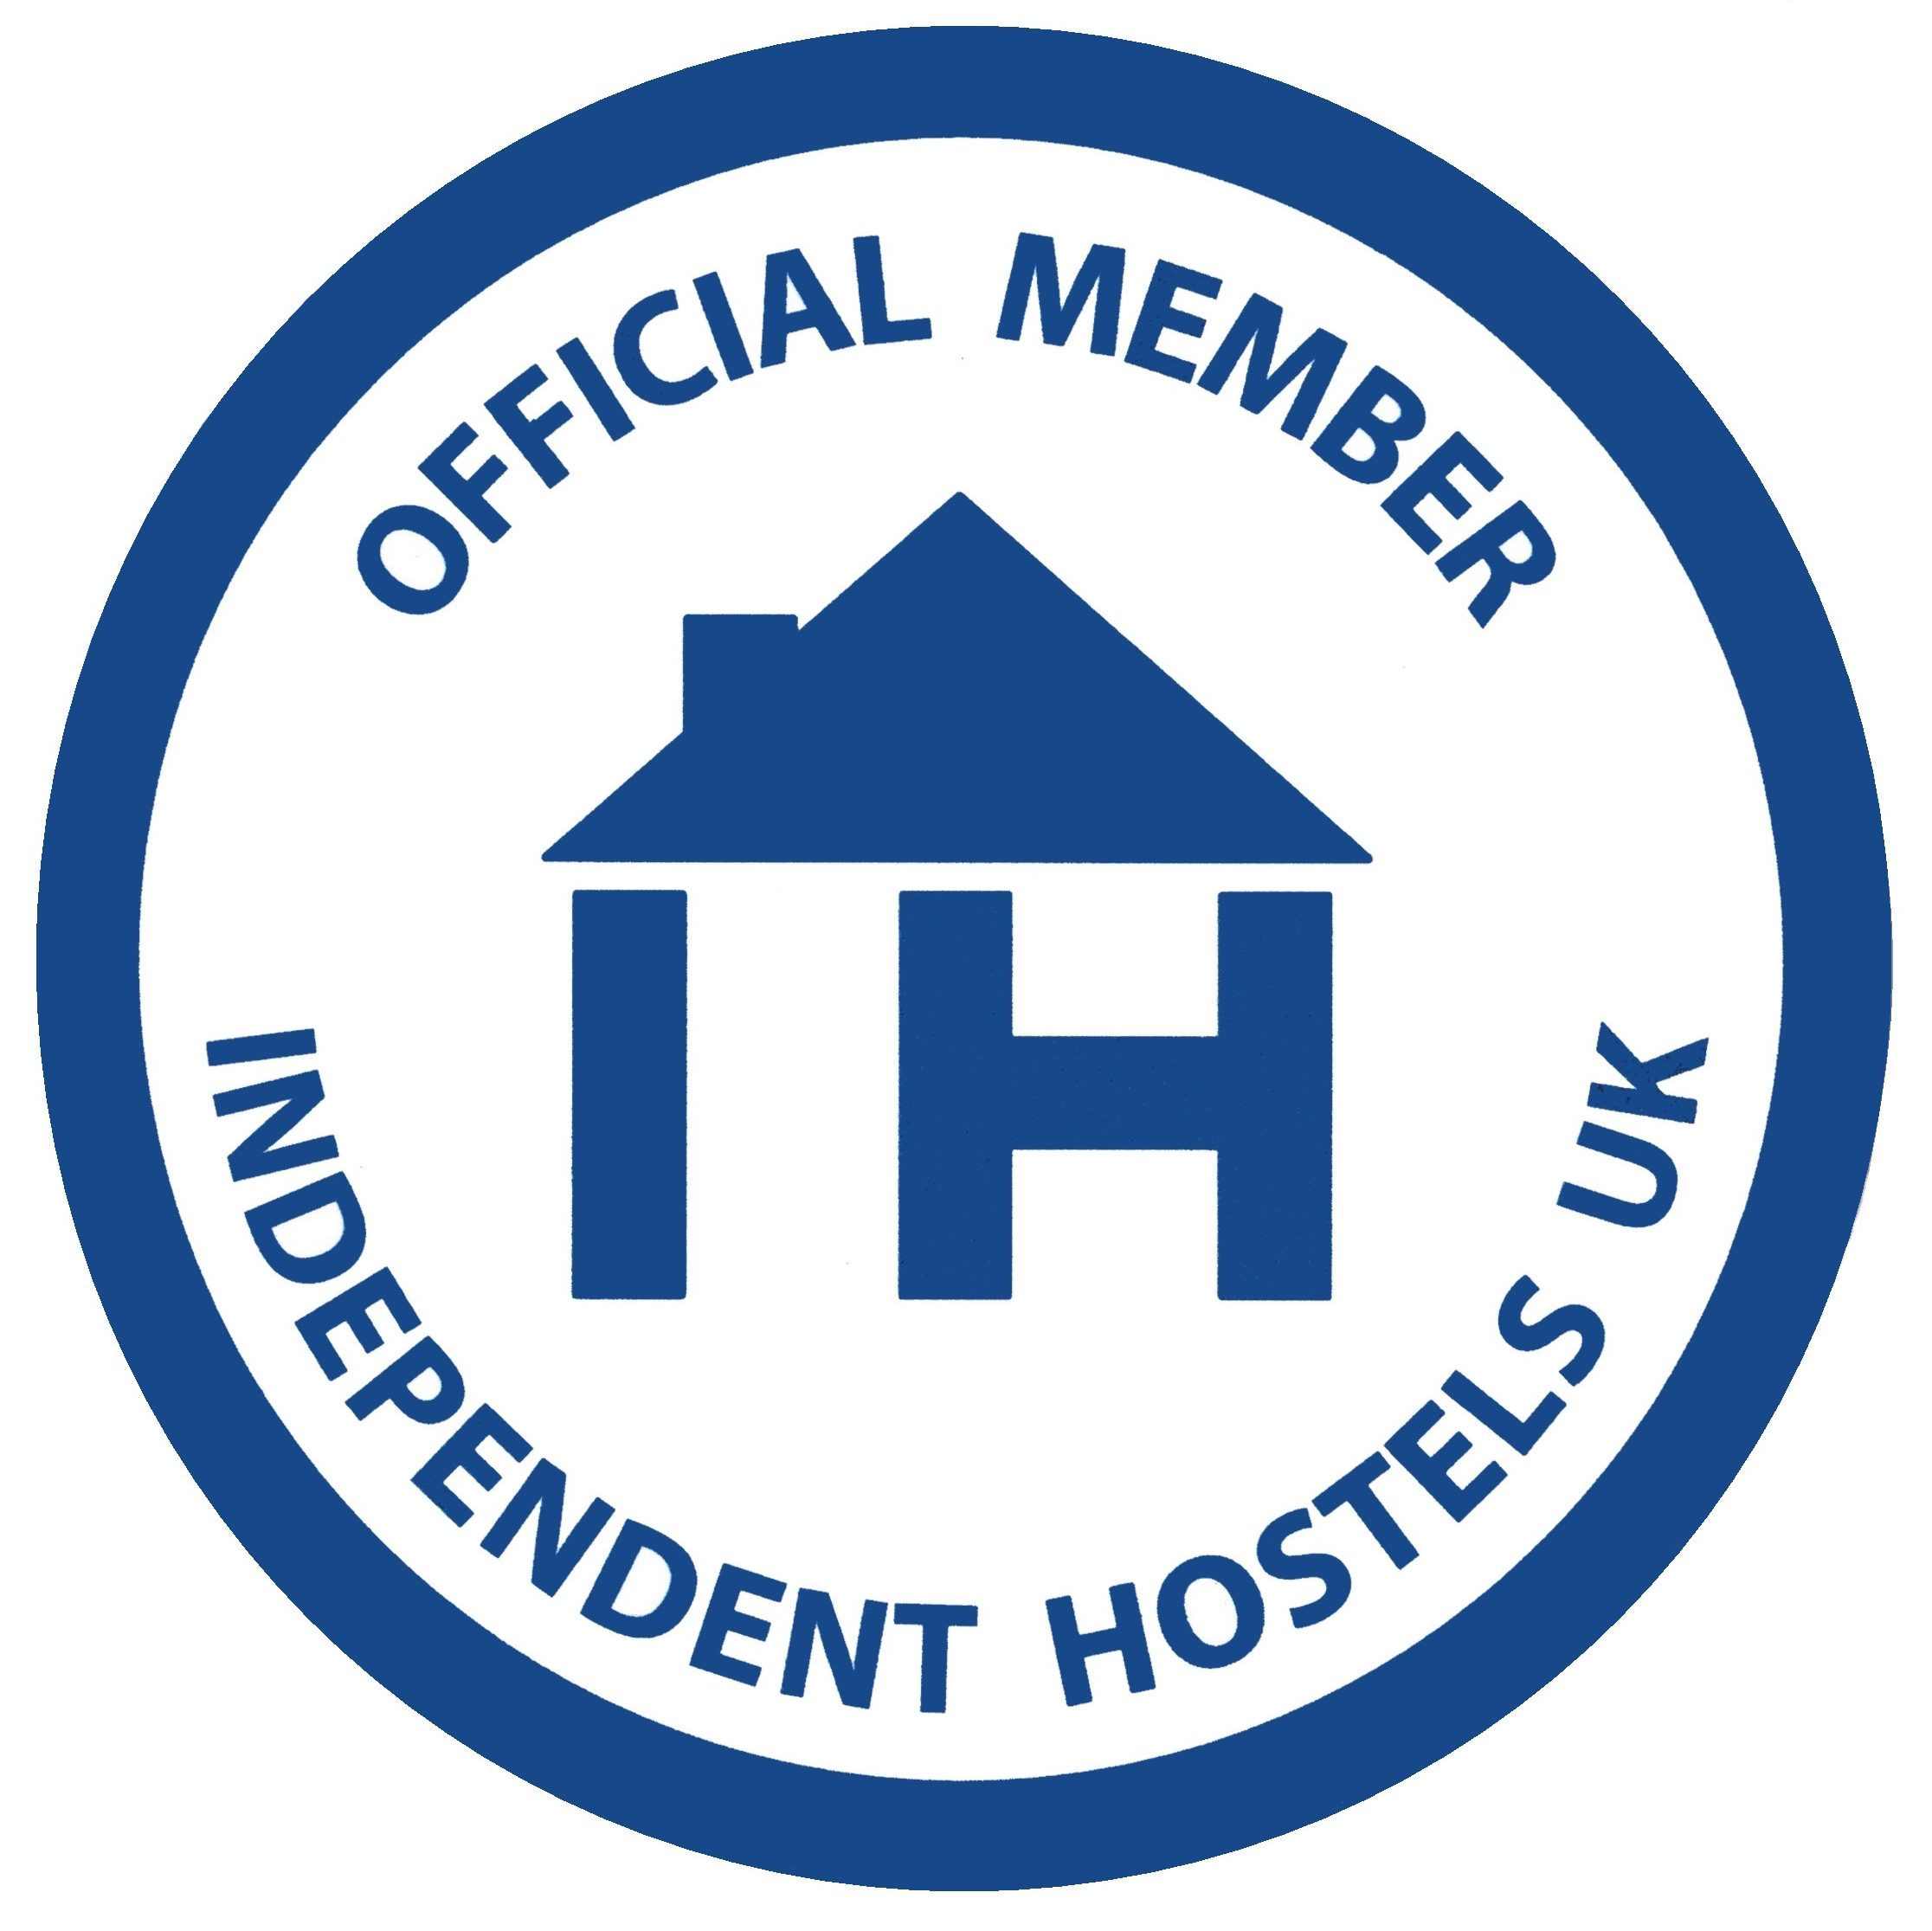 OFFICIAL MEMBER INDEPENDENT HOSTELS UK